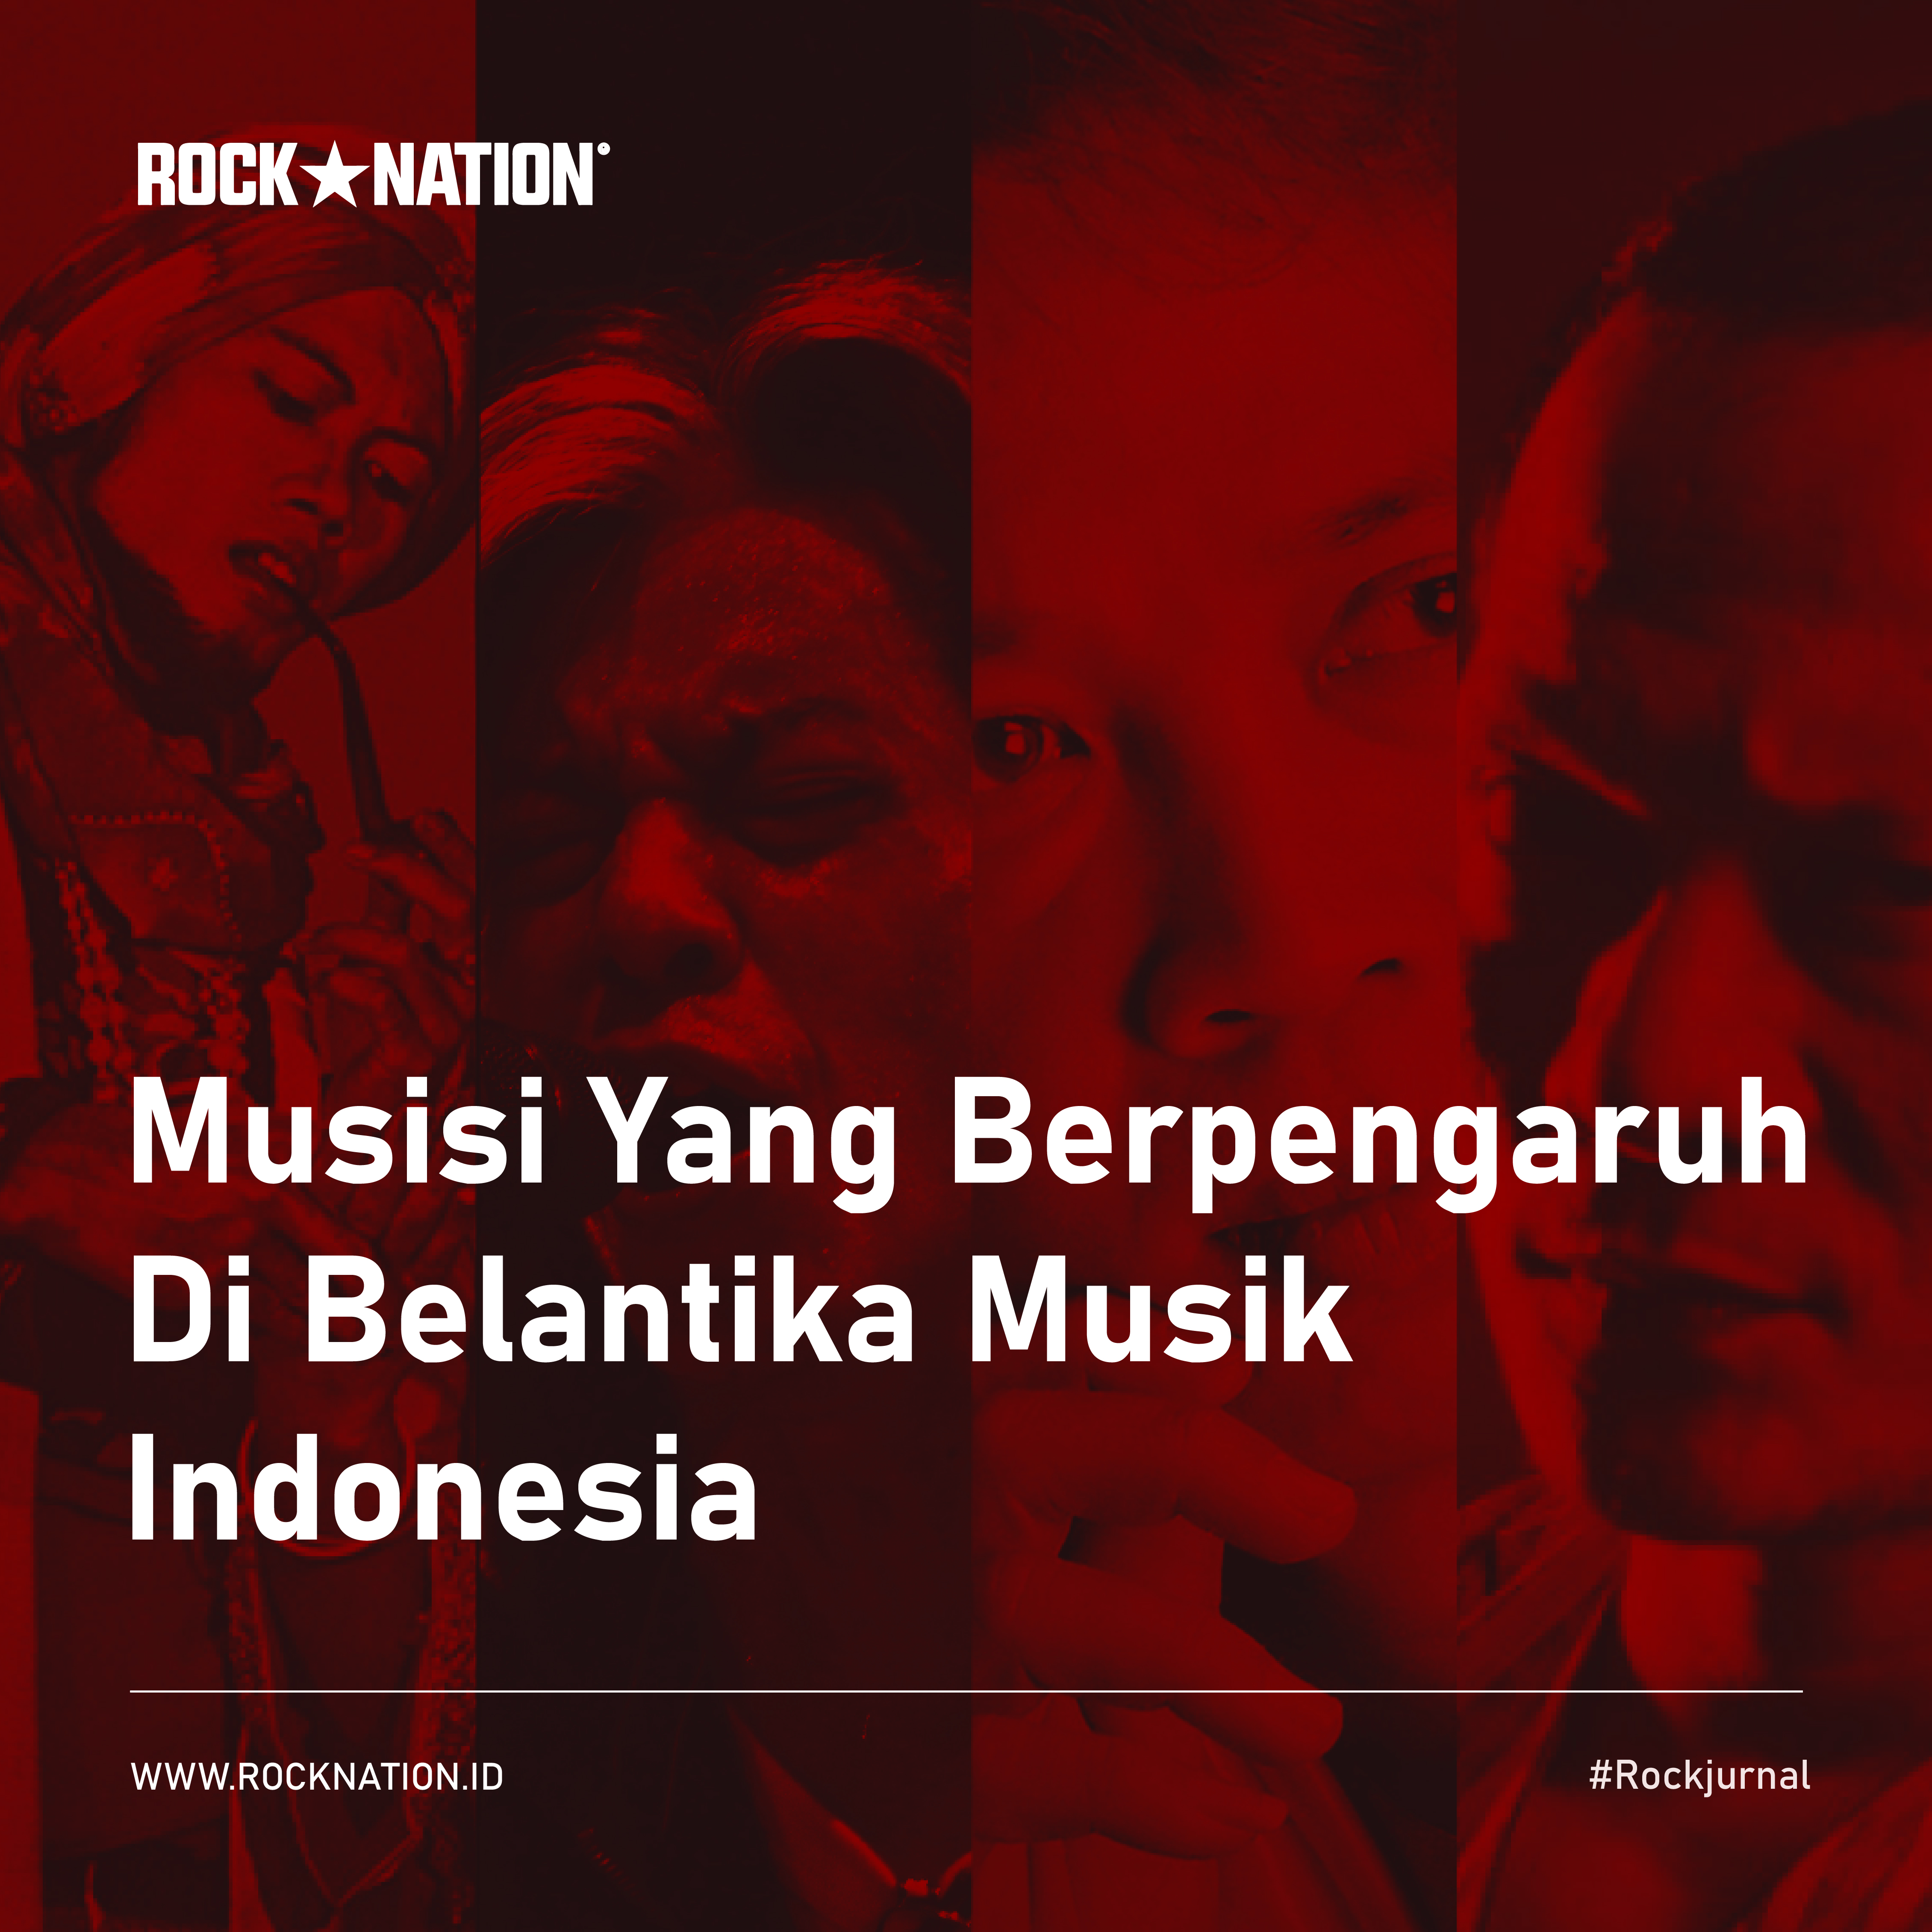 Musisi Yang Berpengaruh Di Belantika Musik Indonesia image